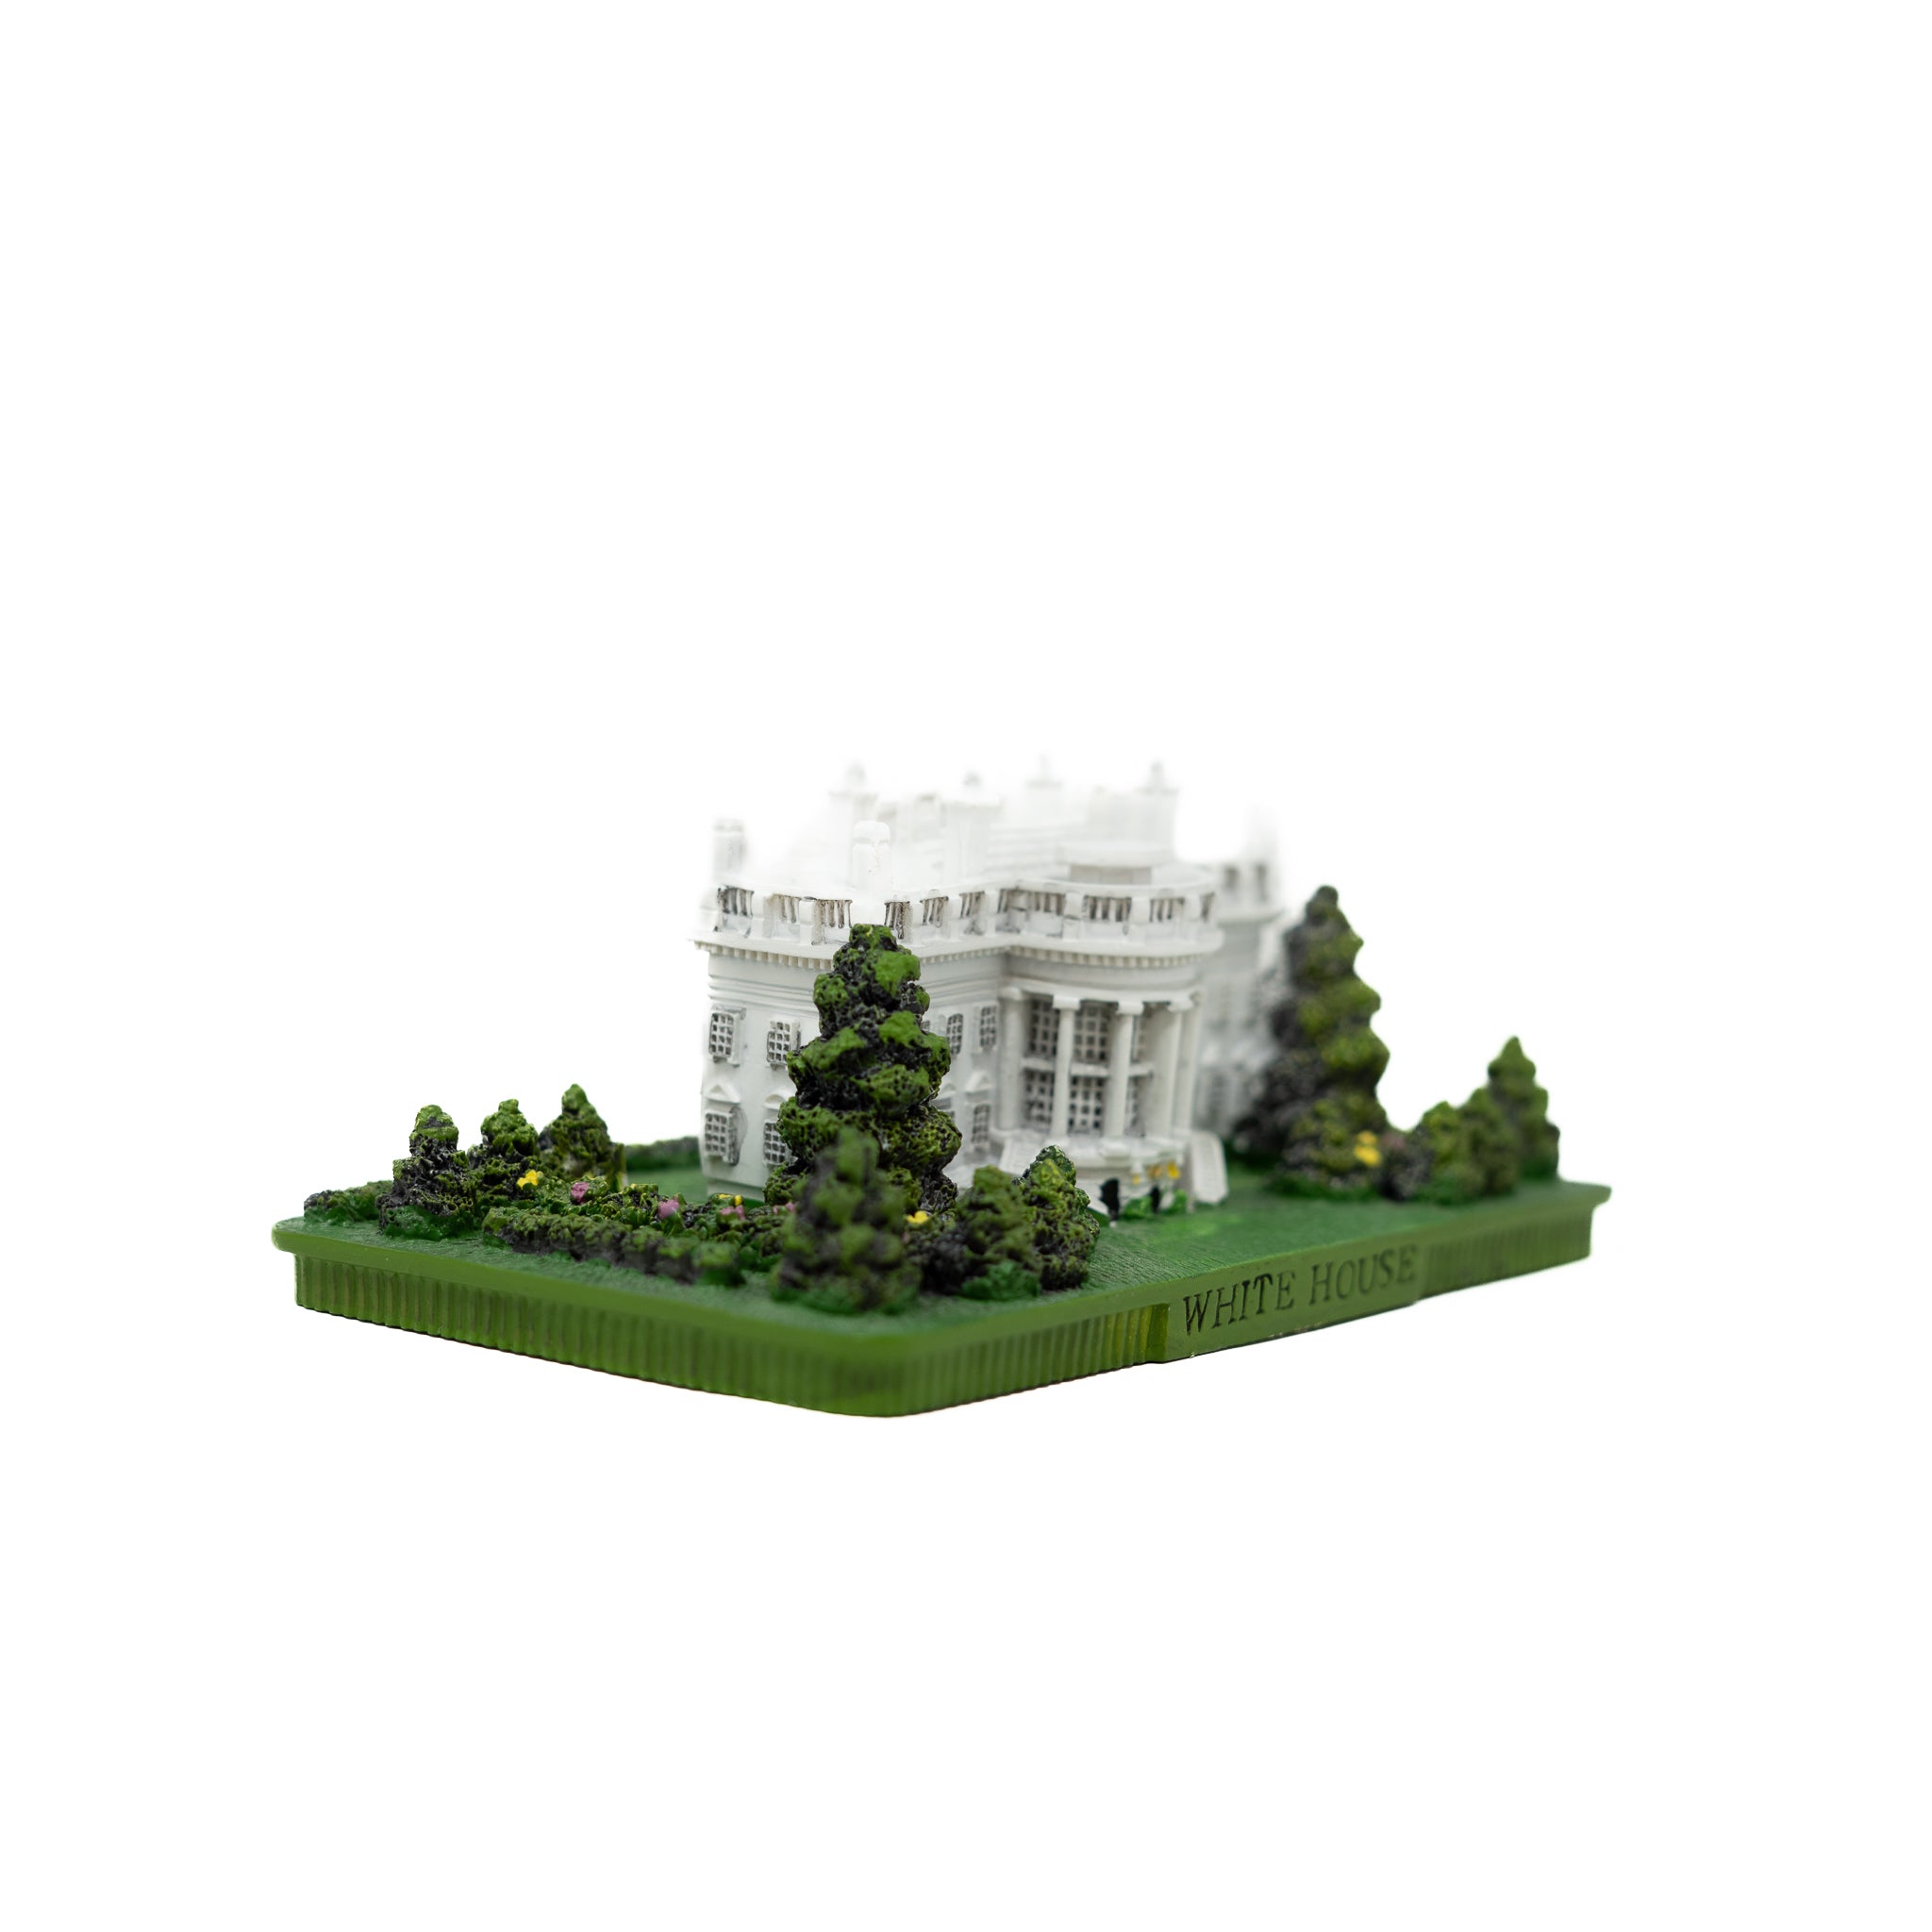 The White House Replica